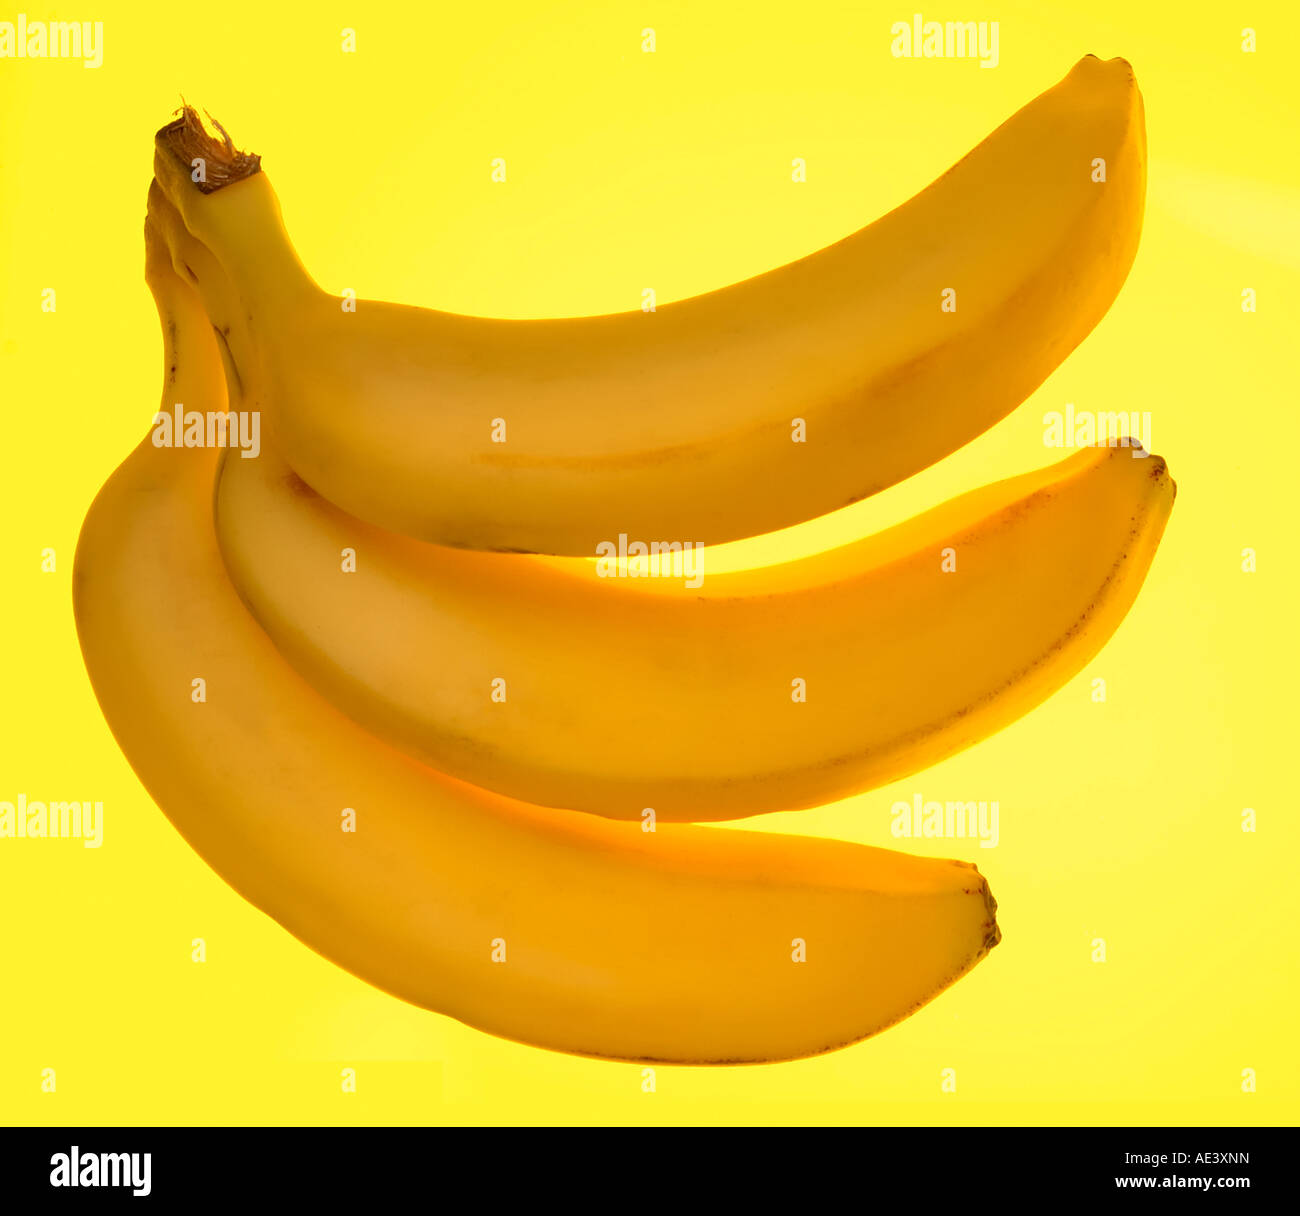 3 Bananen auf gelbem Hintergrund Stockfoto